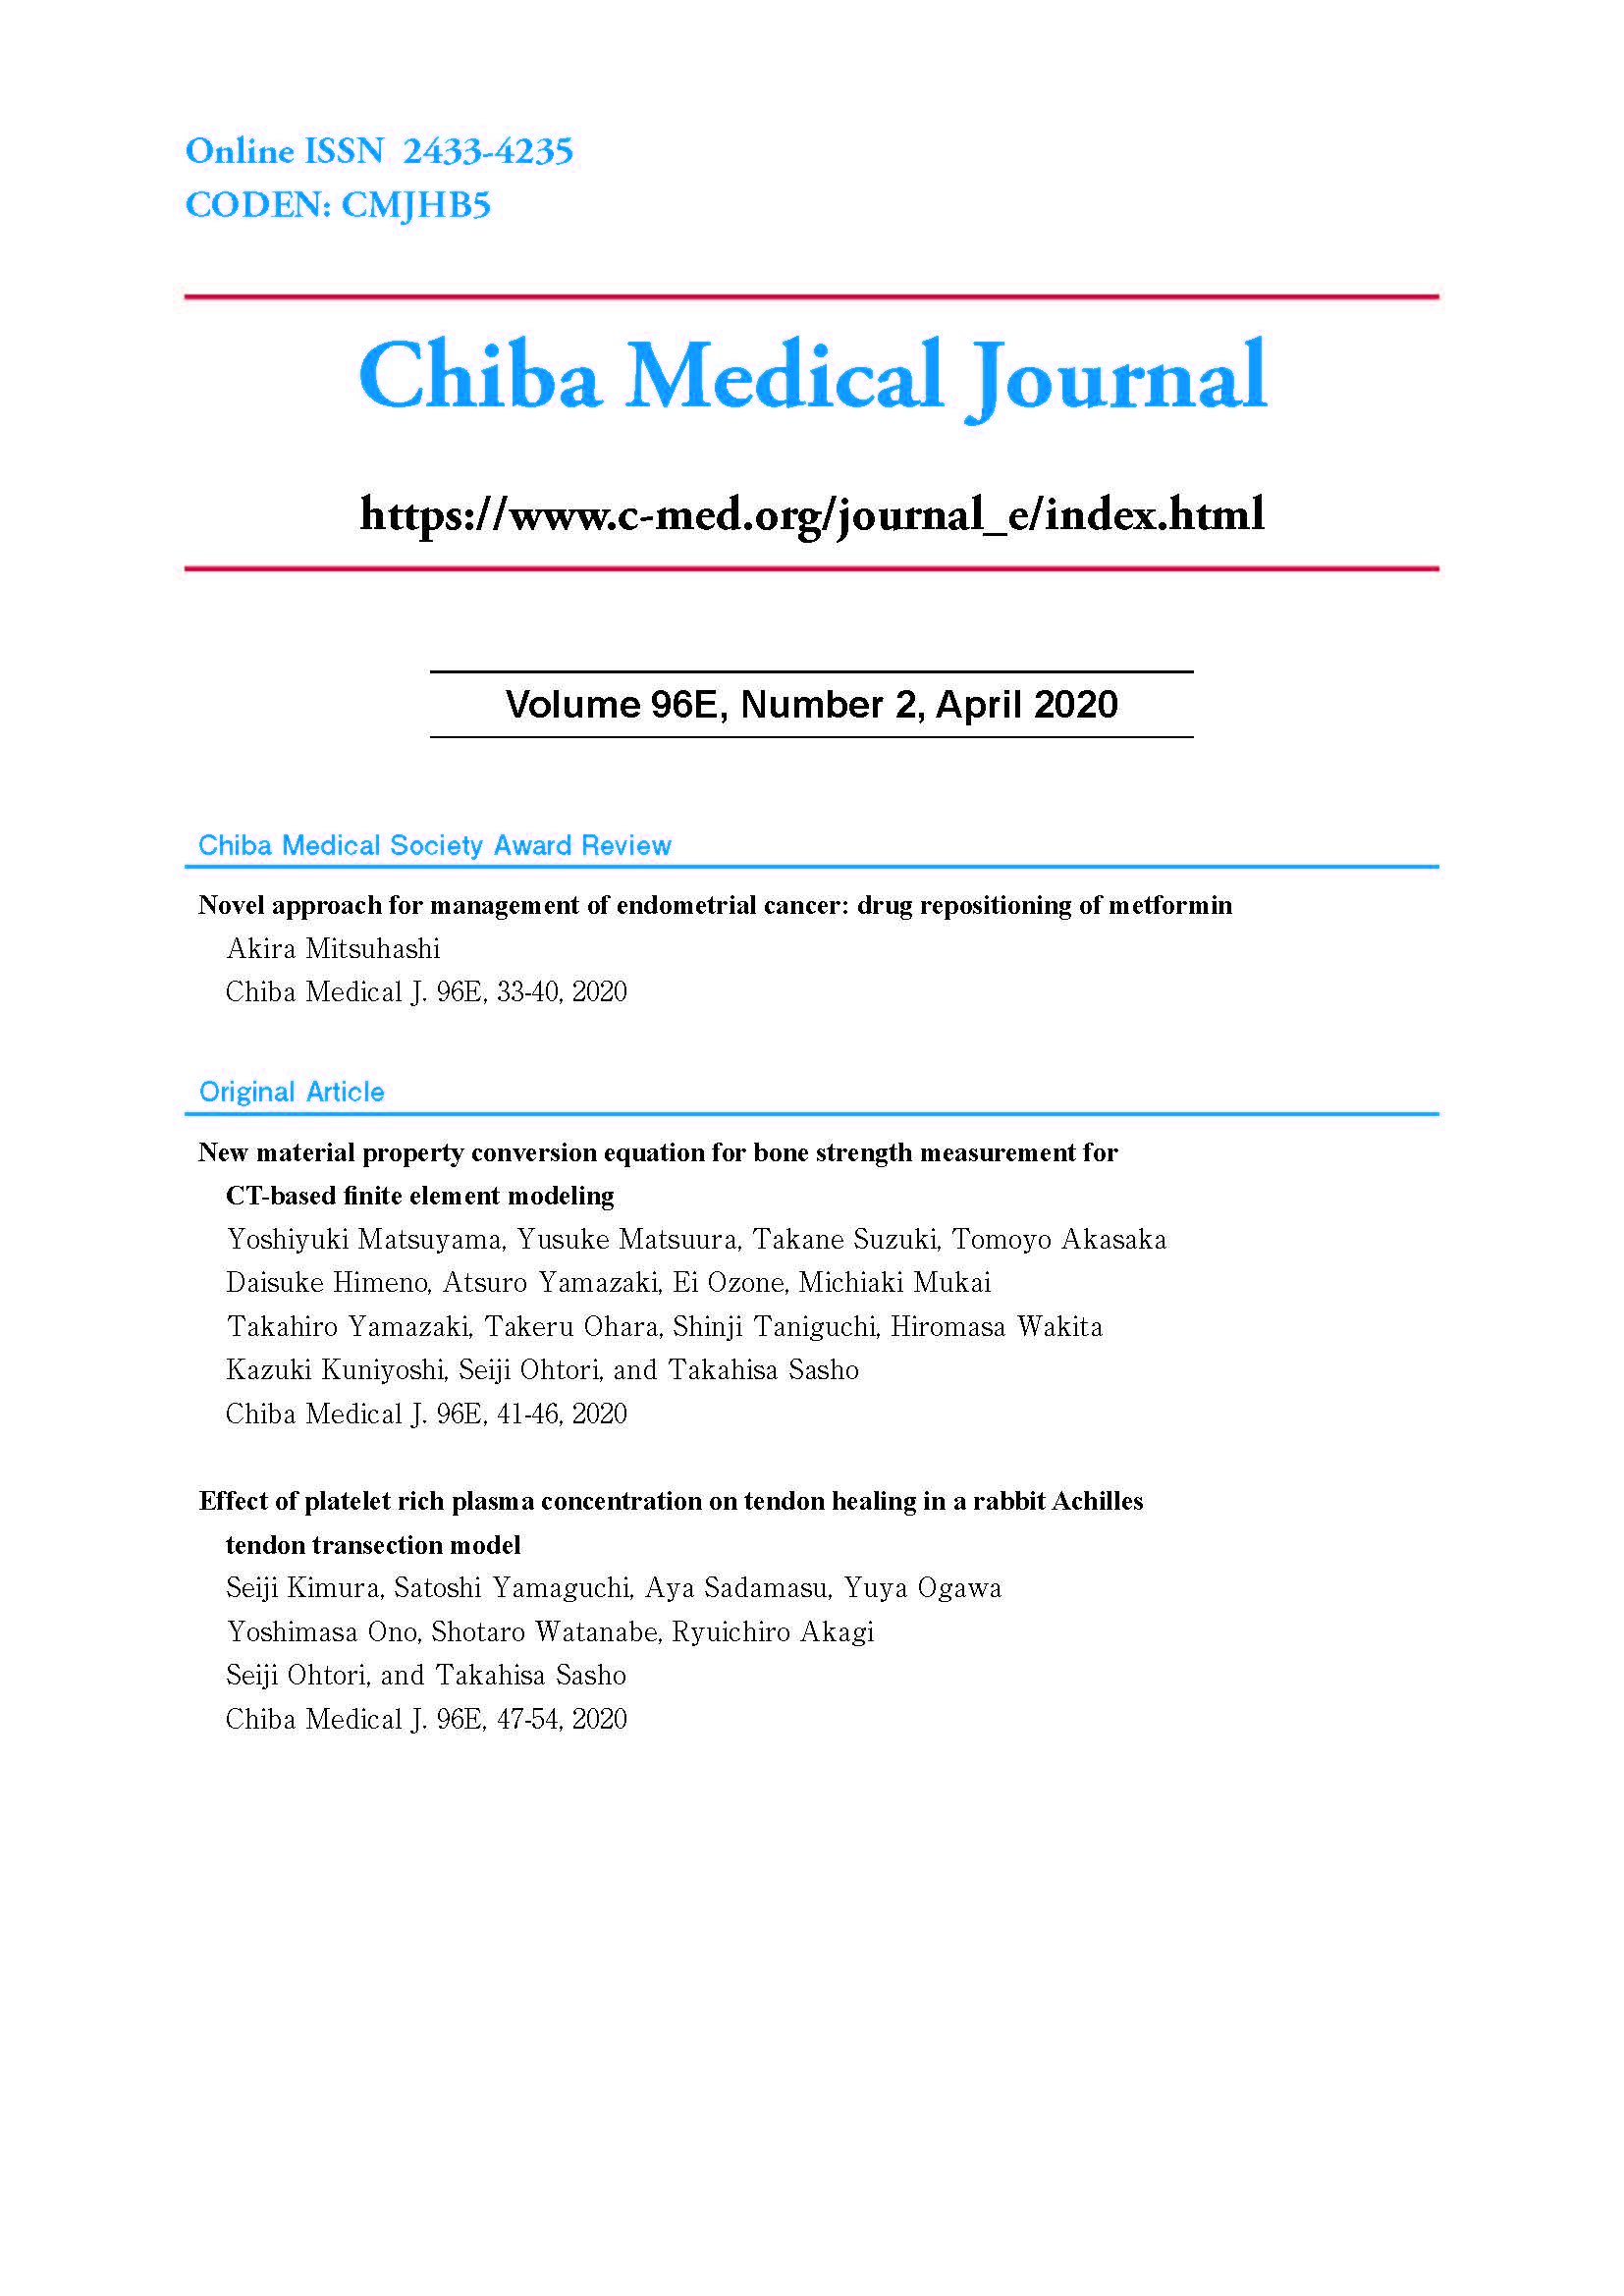 Chiba Medical Journal ; Vol.96E No.2